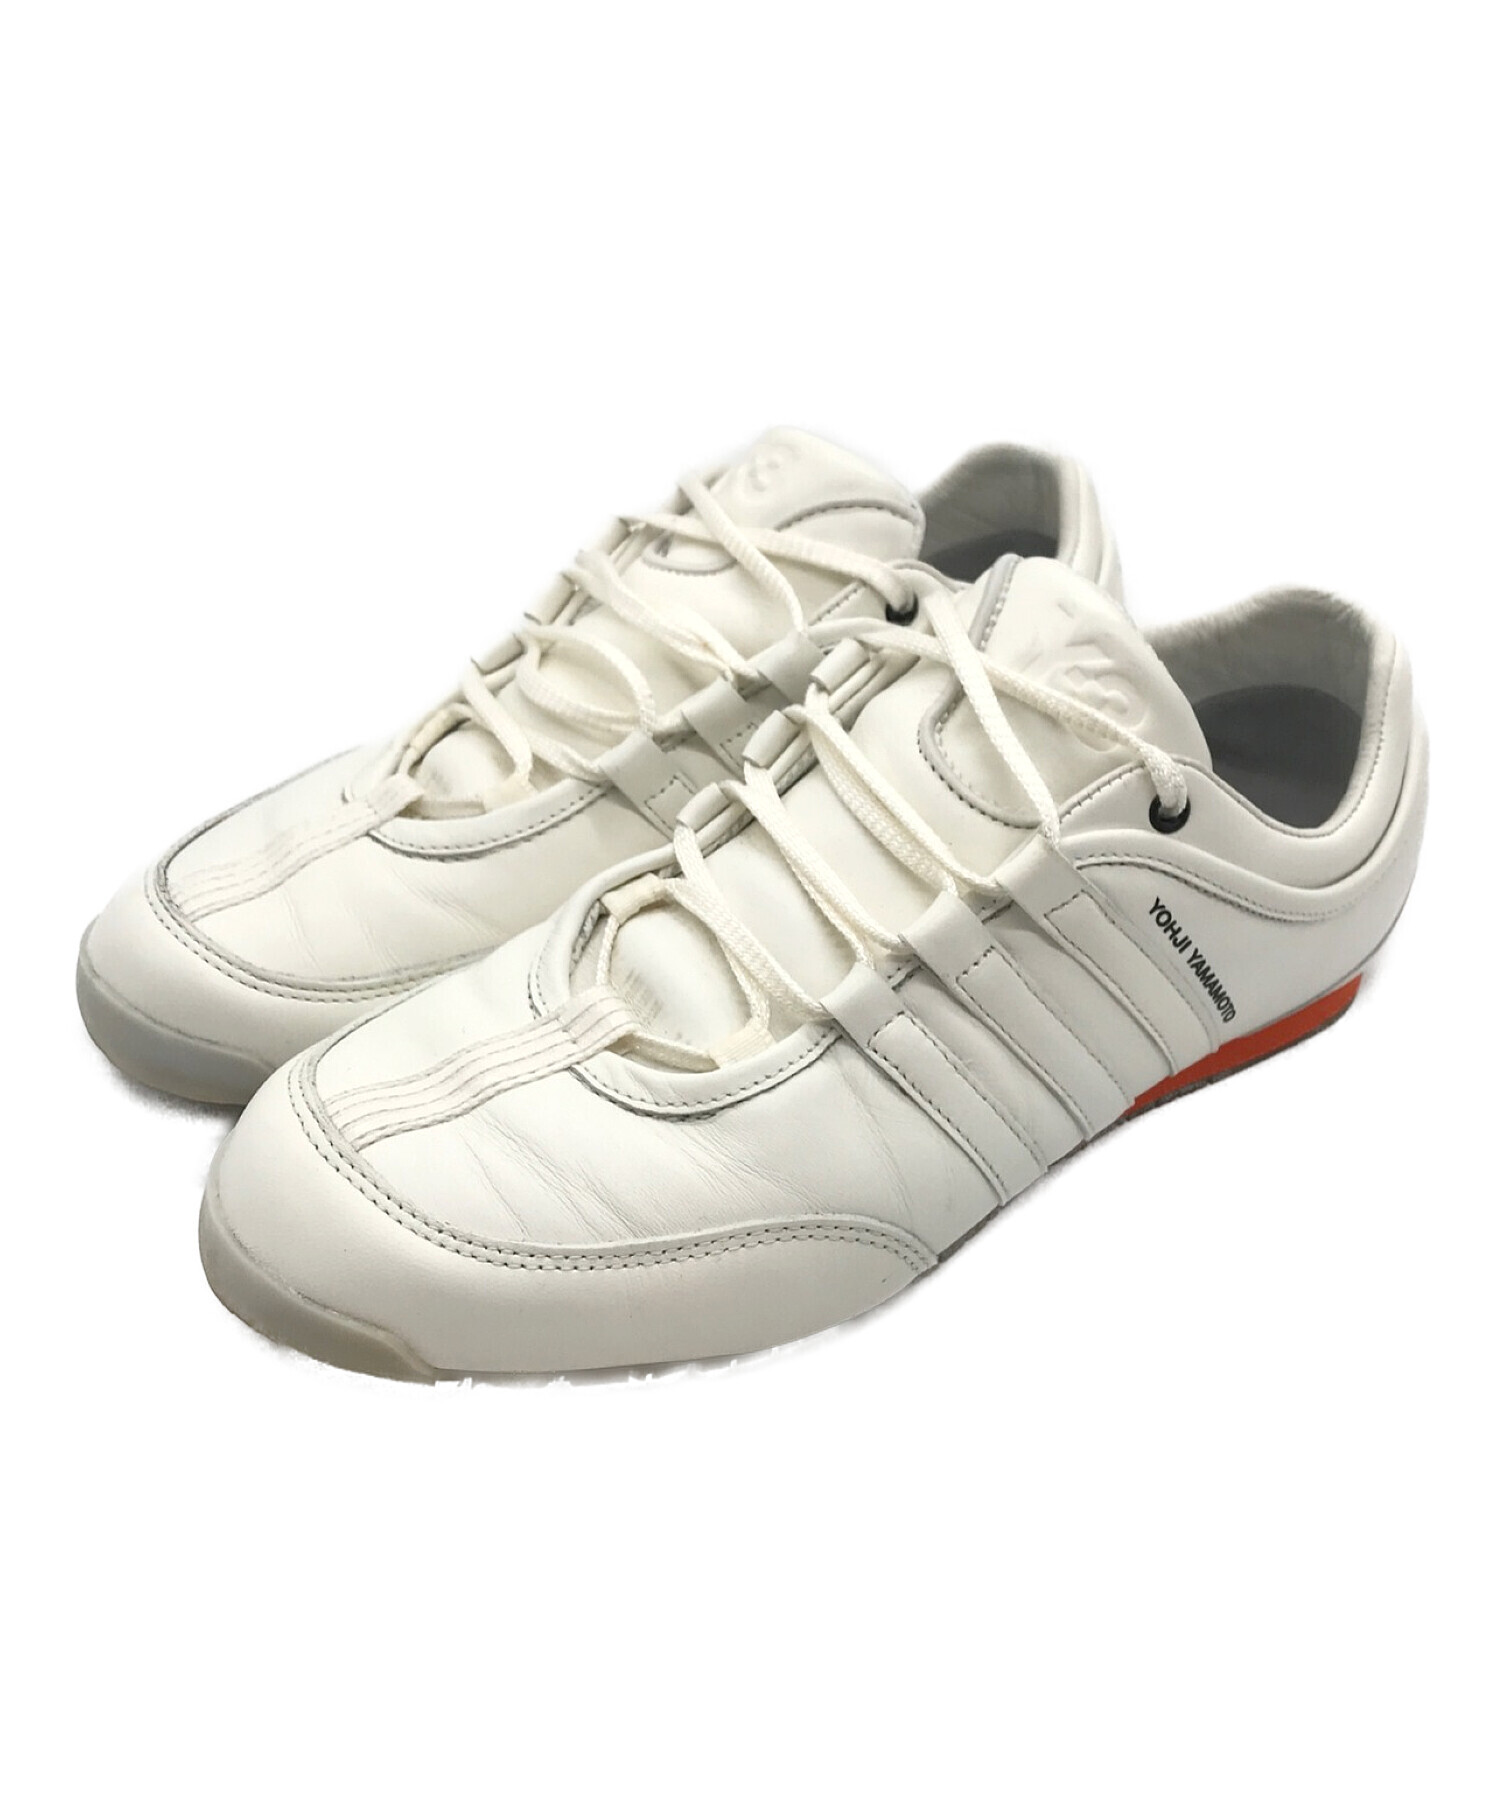 Y-3 (ワイスリー) adidas (アディダス) Boxing ホワイト サイズ:27.5